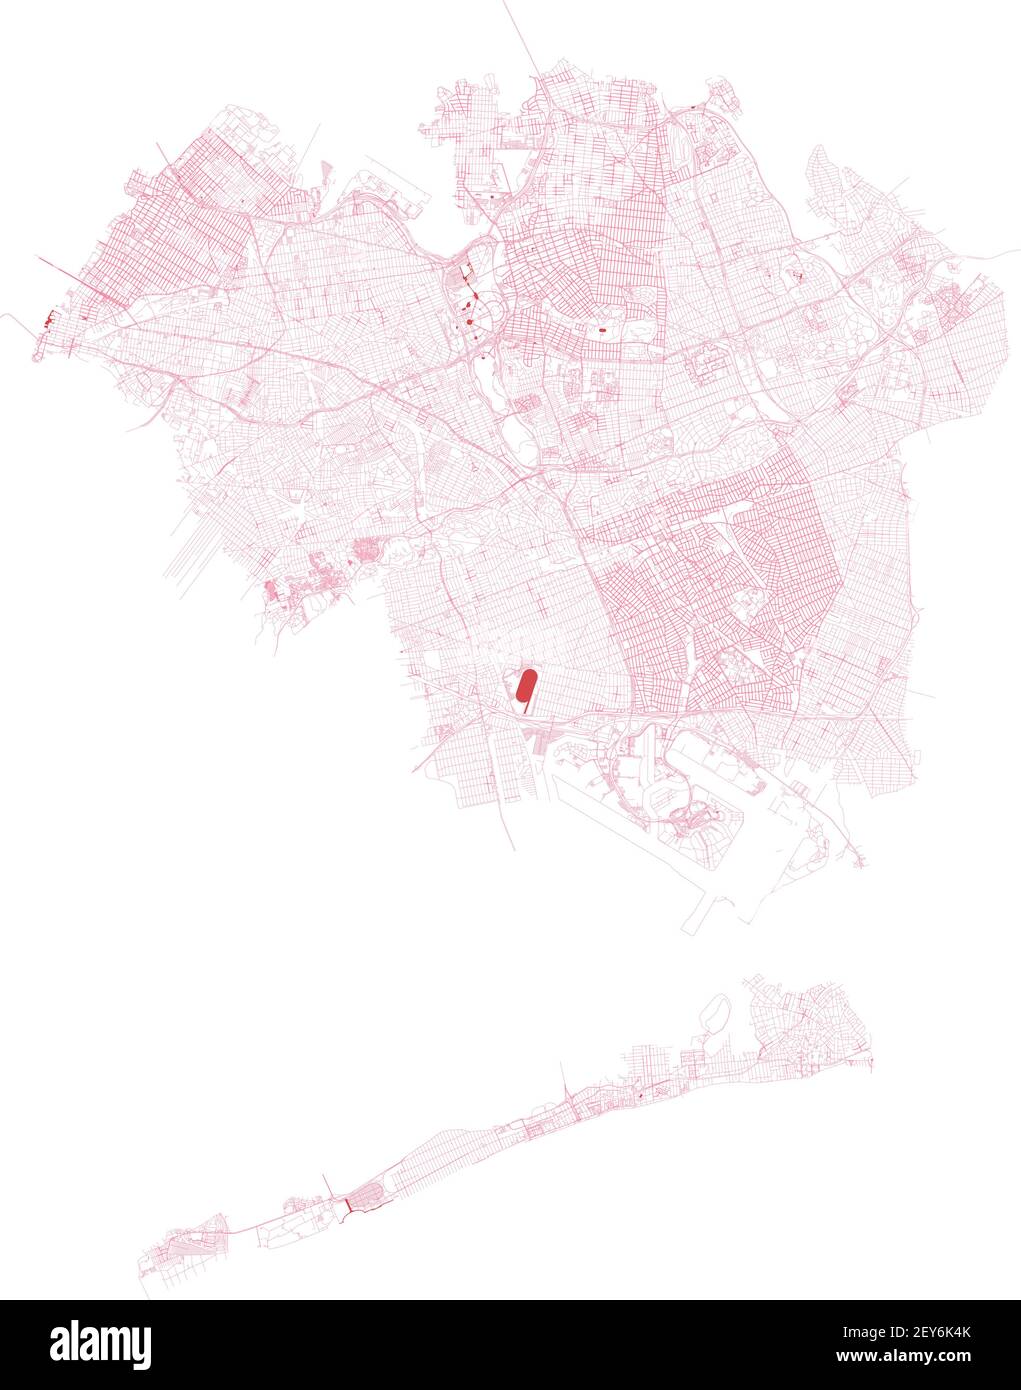 Carte Queens, ville de New York, quartiers, administration gouvernementale. Rues et quartier. Plan de la ville. États-Unis Illustration de Vecteur